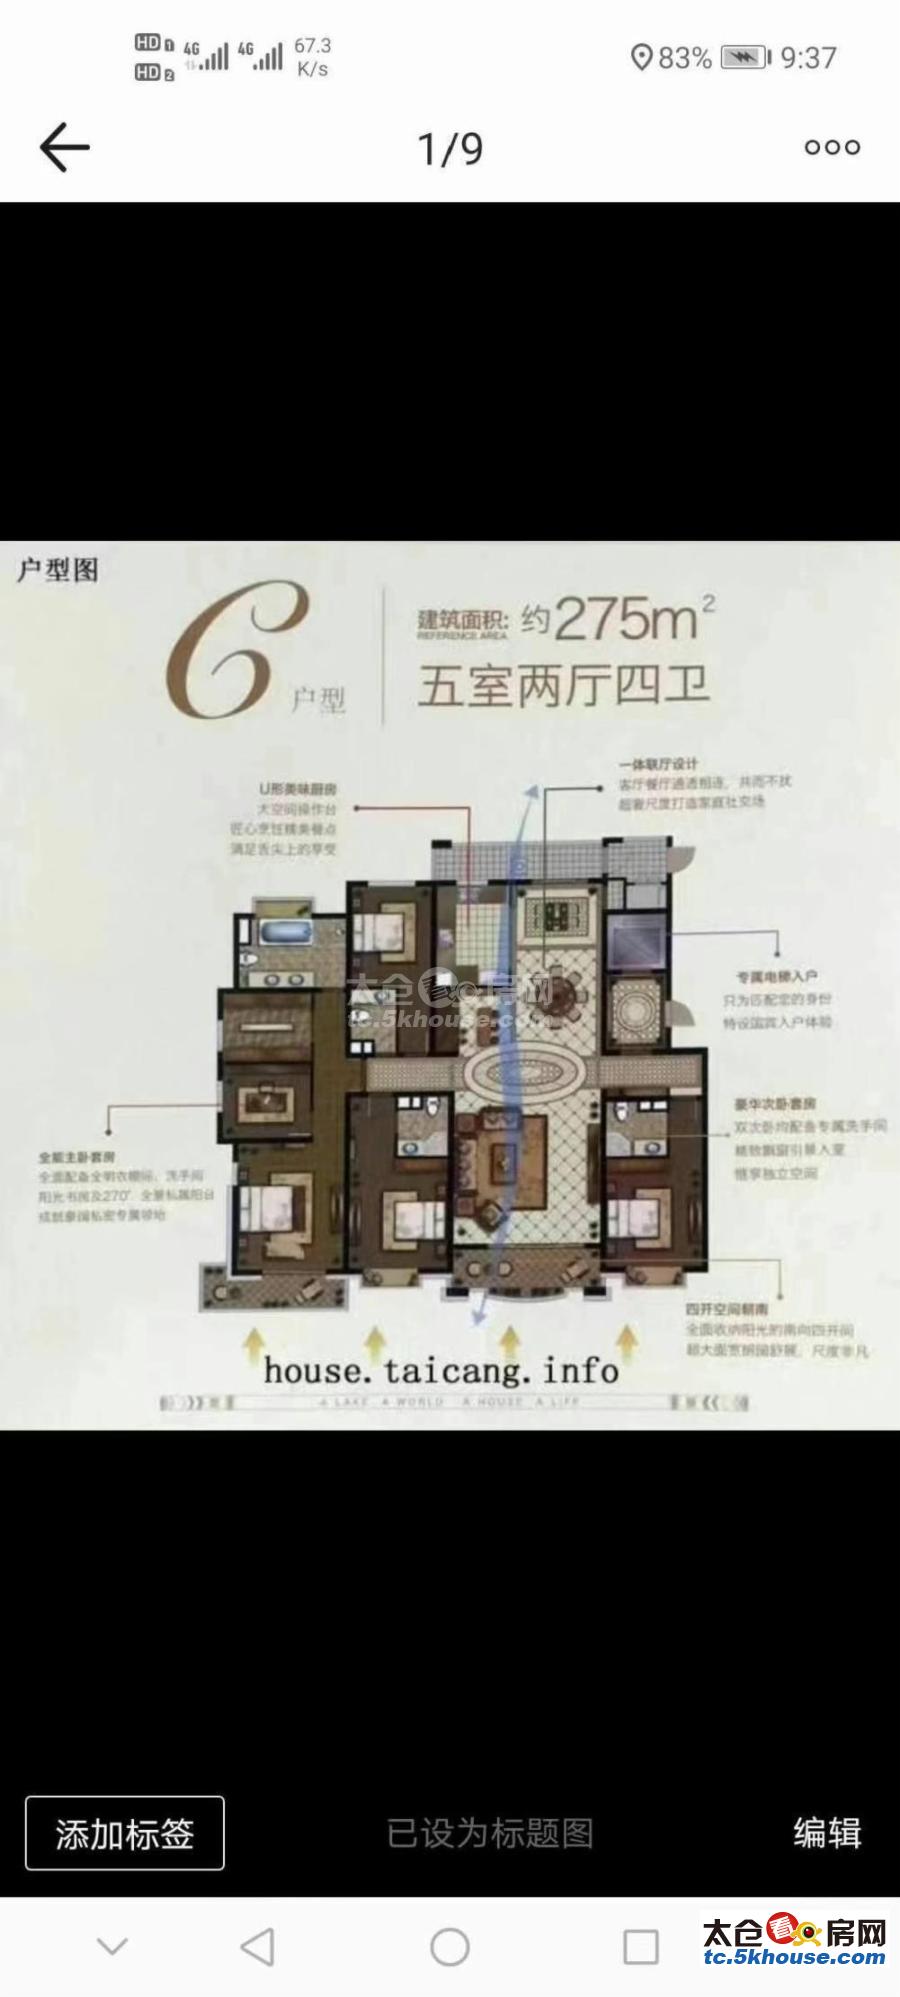 出售 上海公馆 275平 毛坯 550万 好楼层 有钥匙